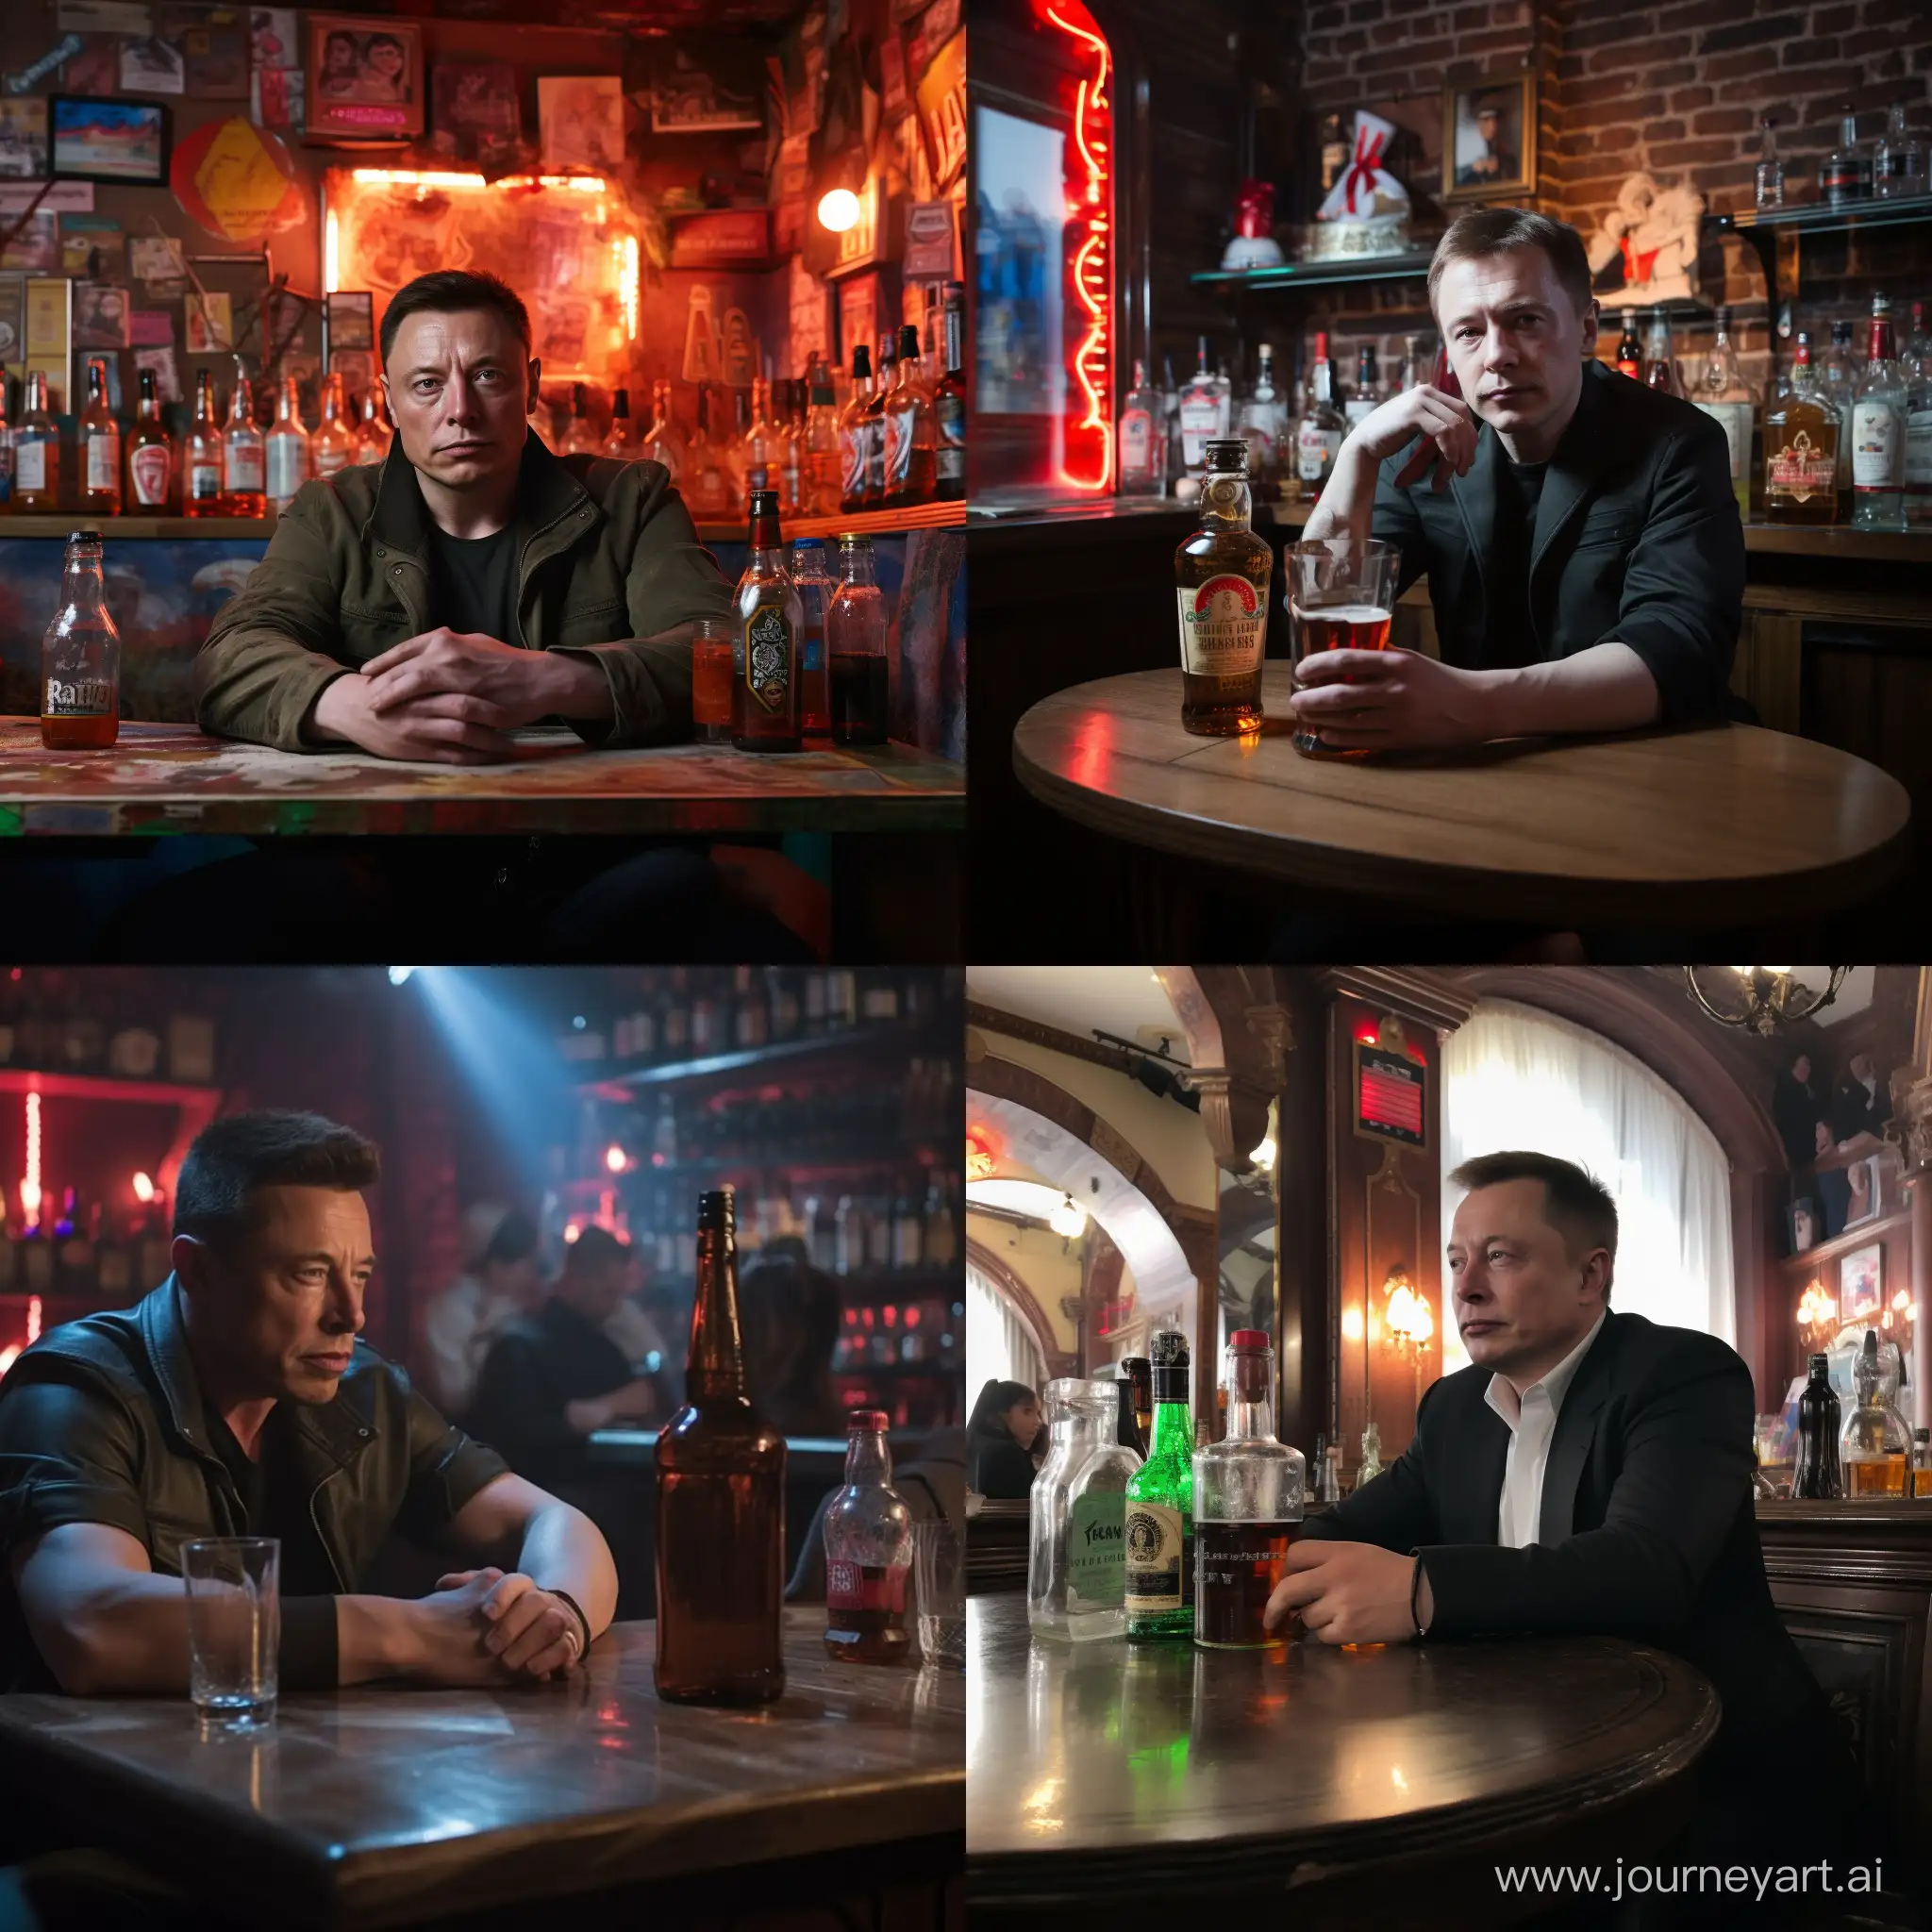 Илон Маск сидит в российском баре и грустит